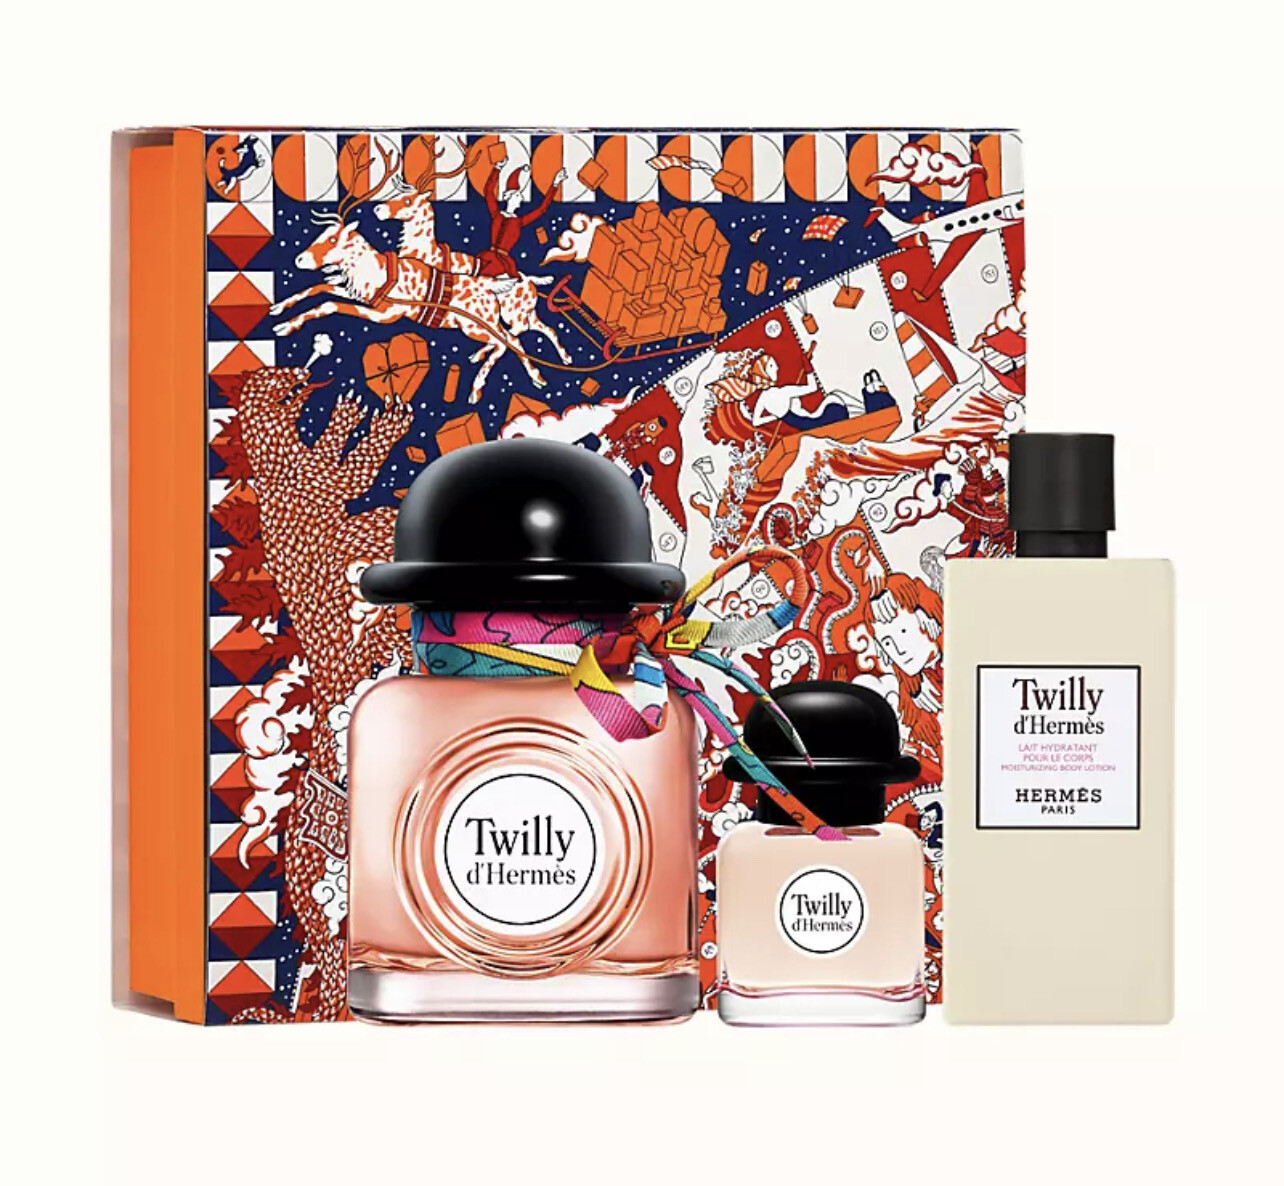 Hermes - Twilly d'Hermes Eau de parfum set